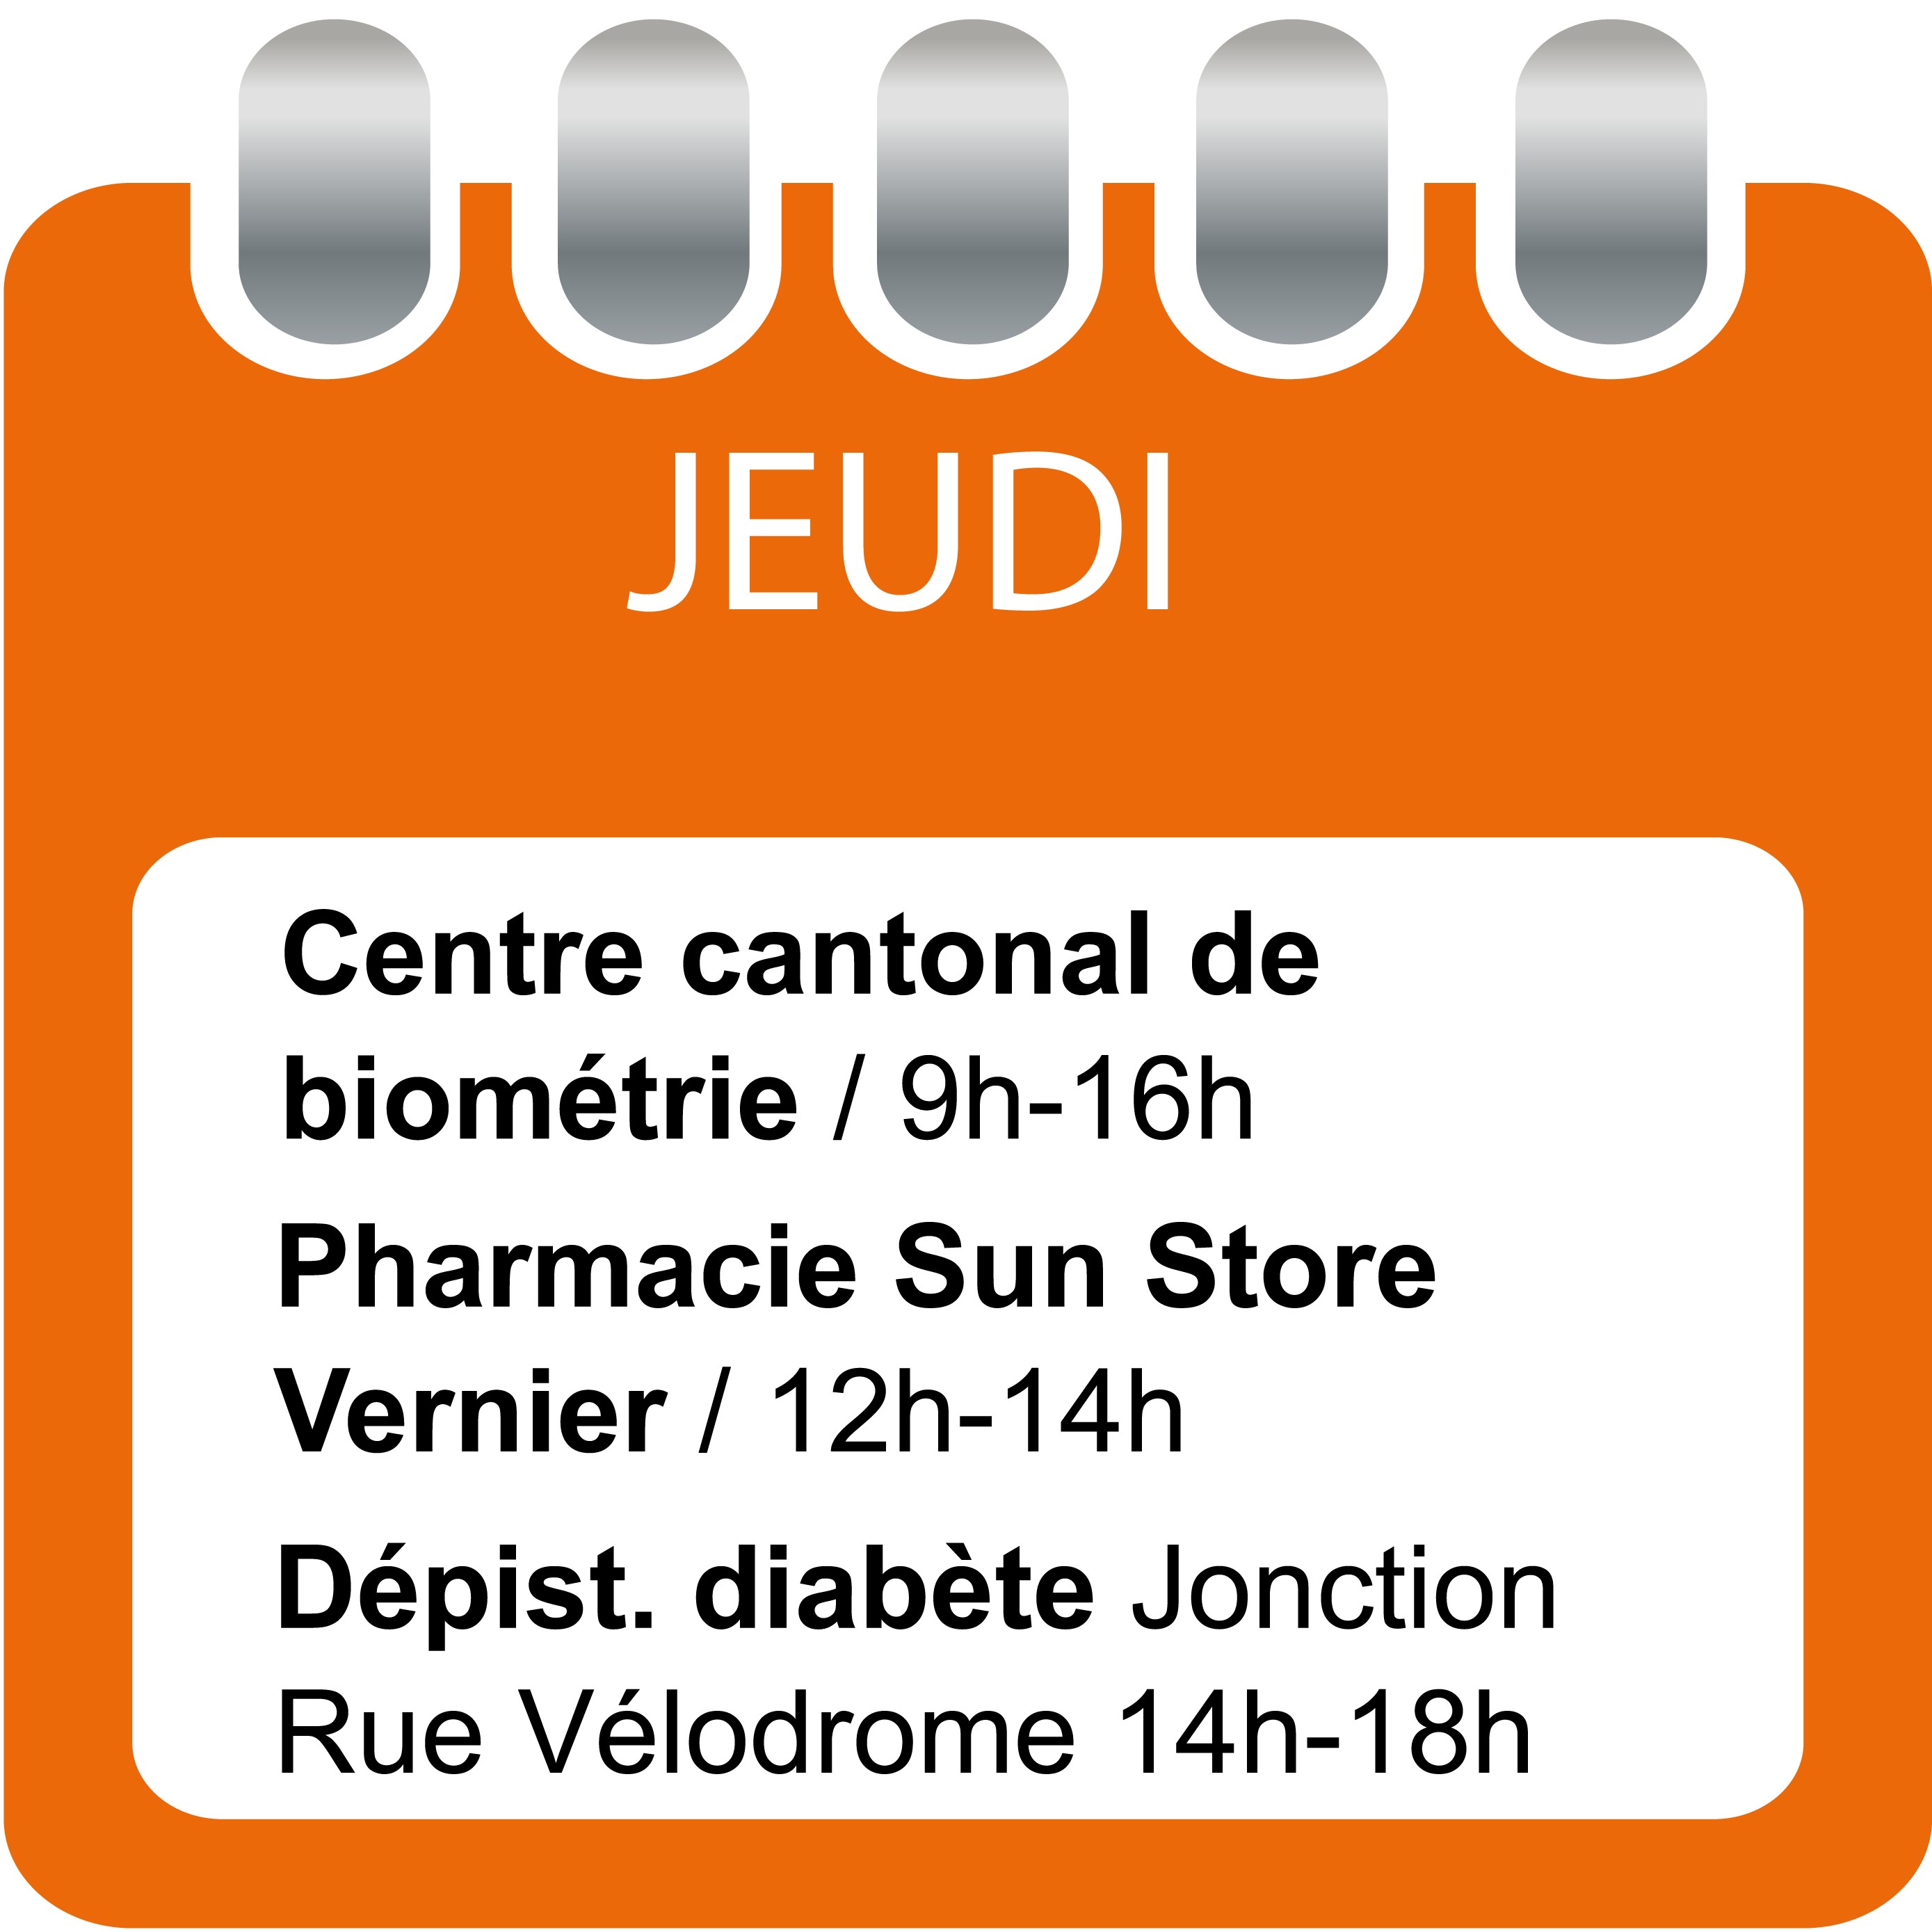 Jeudi - Centre cantonal de biométrie (9h-16h), Pharmacie Sun Store Vernier - ARCenter (12h-14h) et Dépistage diabète (14h-18h)